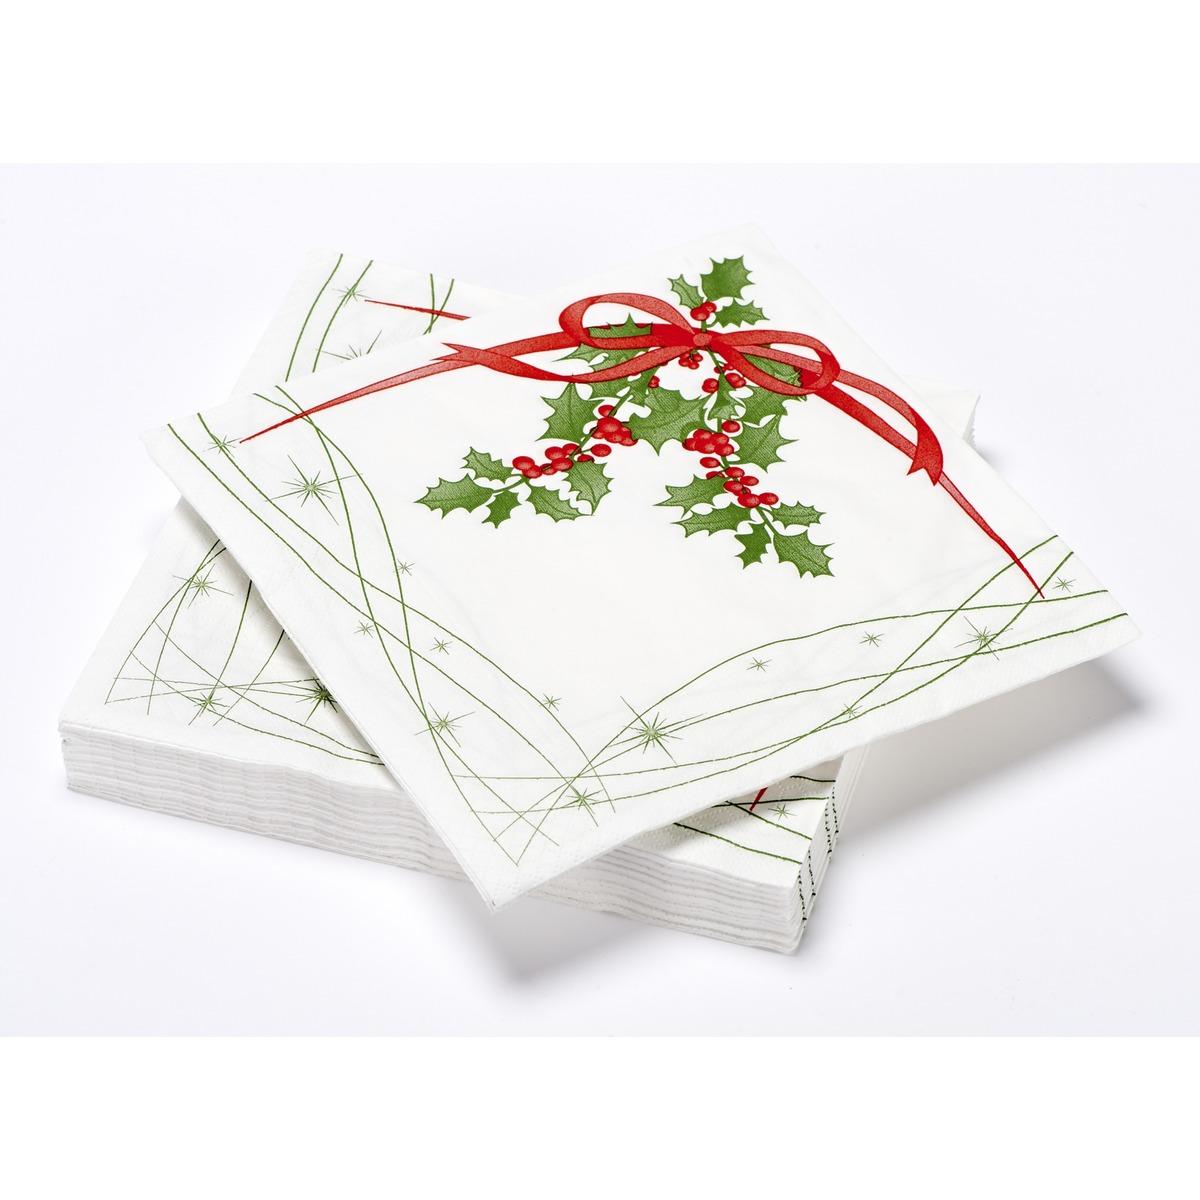 Lot de 20 serviettes en papier imprimé houx - 40 x 40 cm - Blanc, vert et rouge